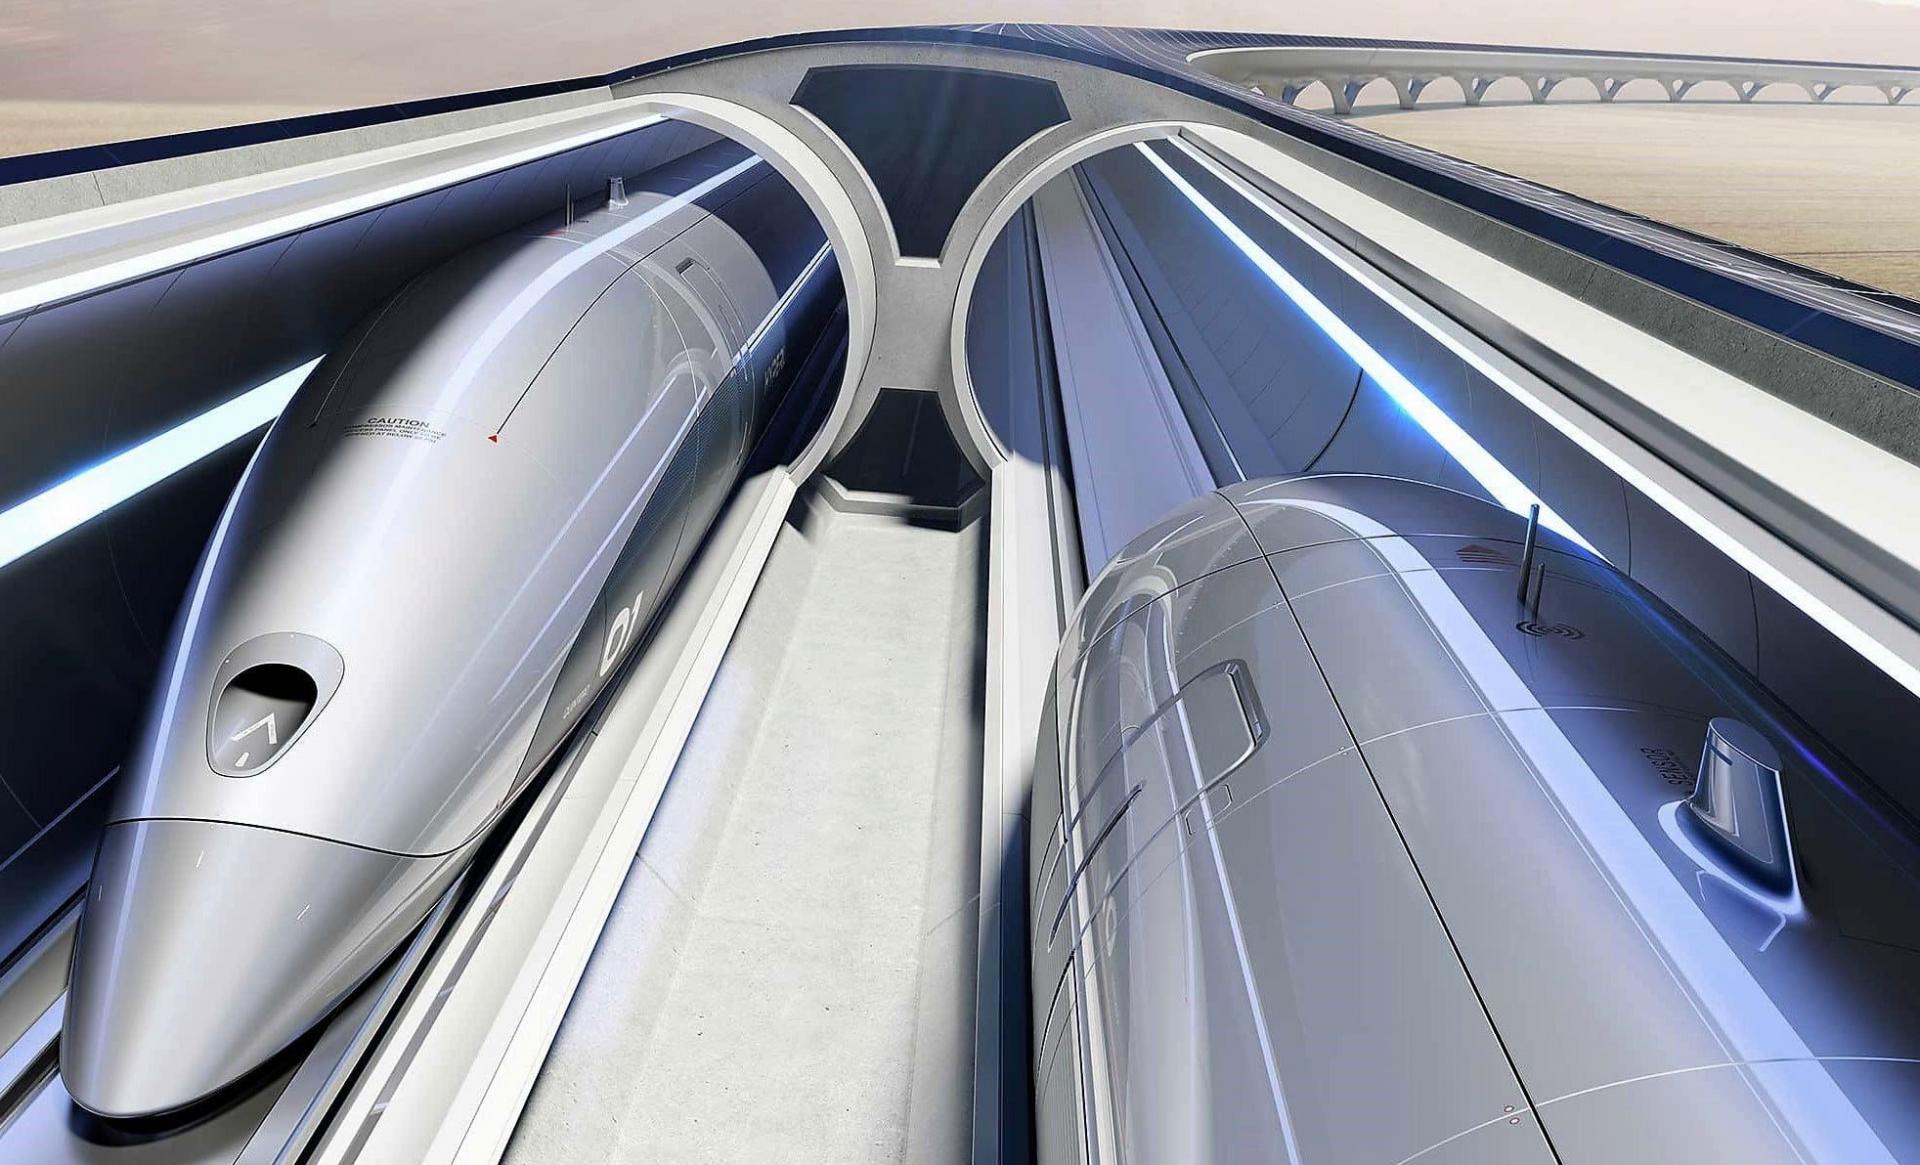 «Северсталь» поставит сталь для строительства пилотной версии инфраструктуры будущего
